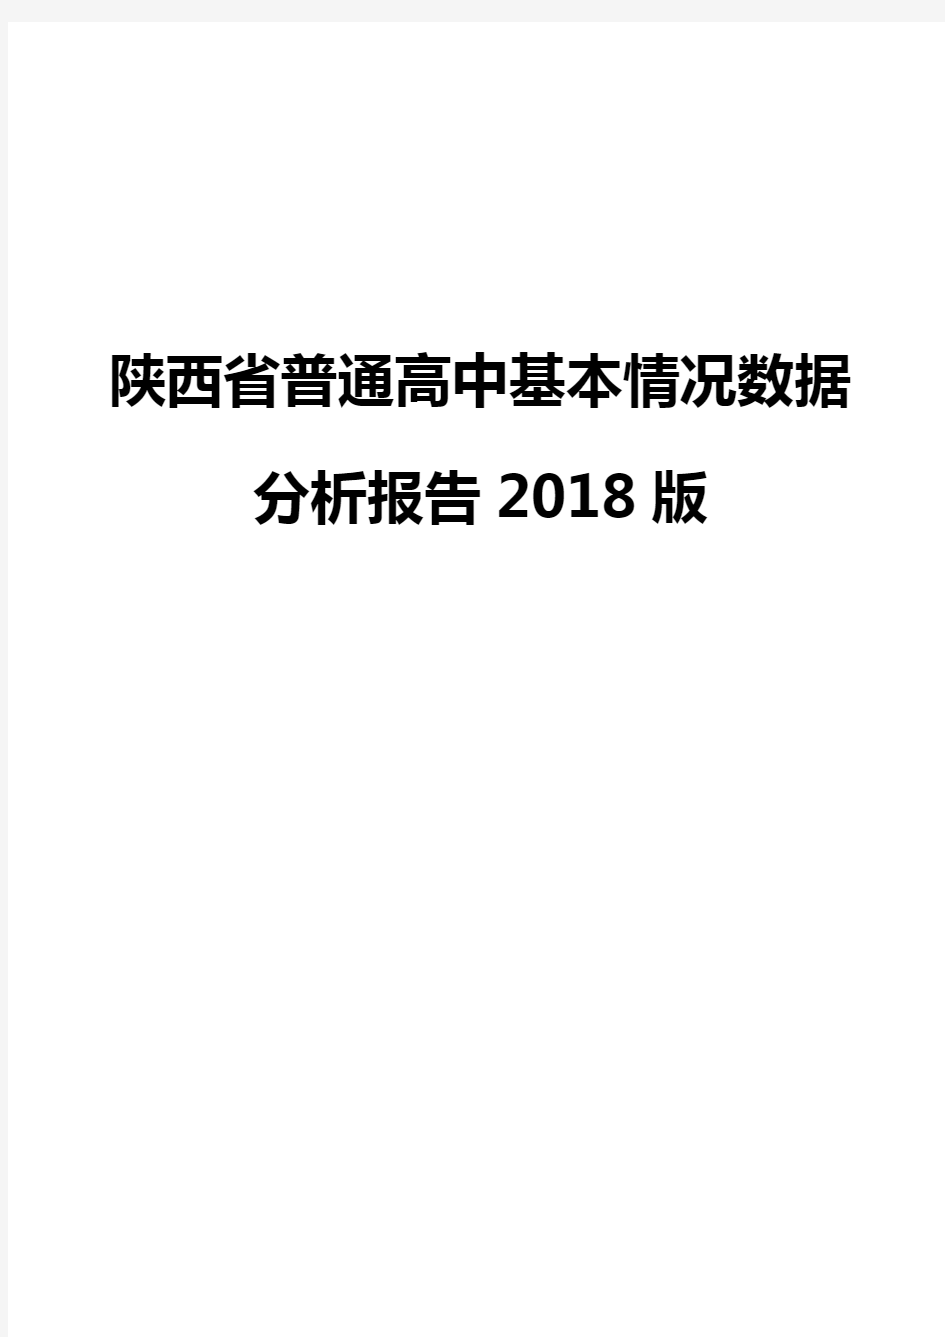 陕西省普通高中基本情况数据分析报告2018版